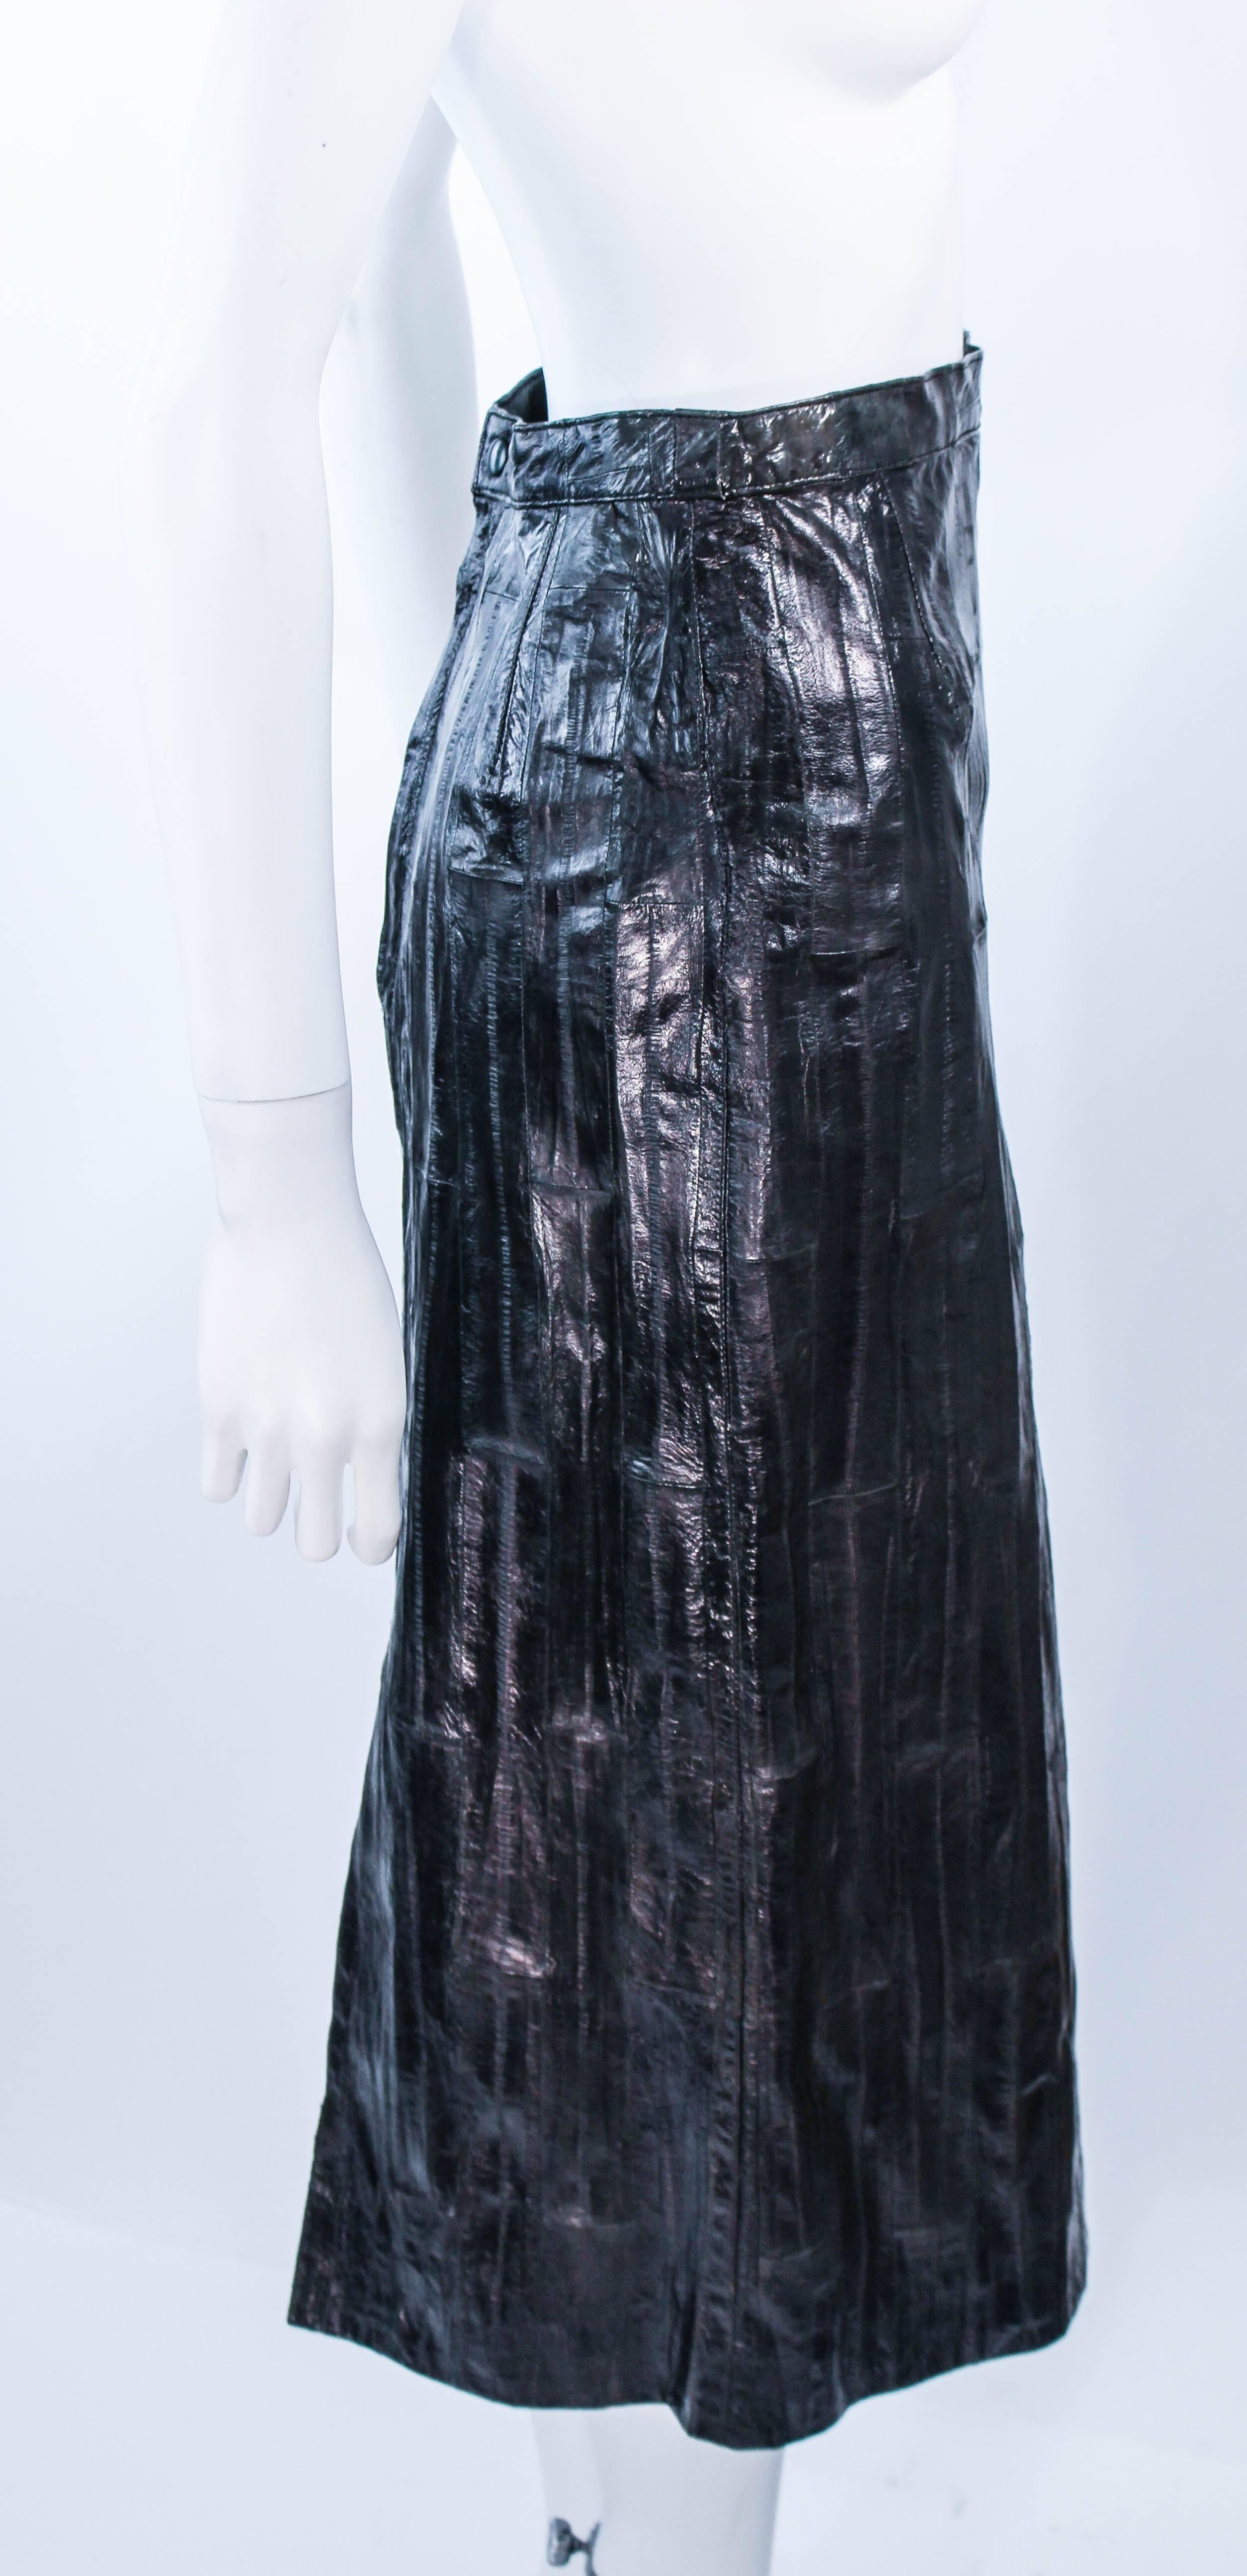 KRIZIA Vintage Black Eel Skirt Size 4 For Sale at 1stDibs